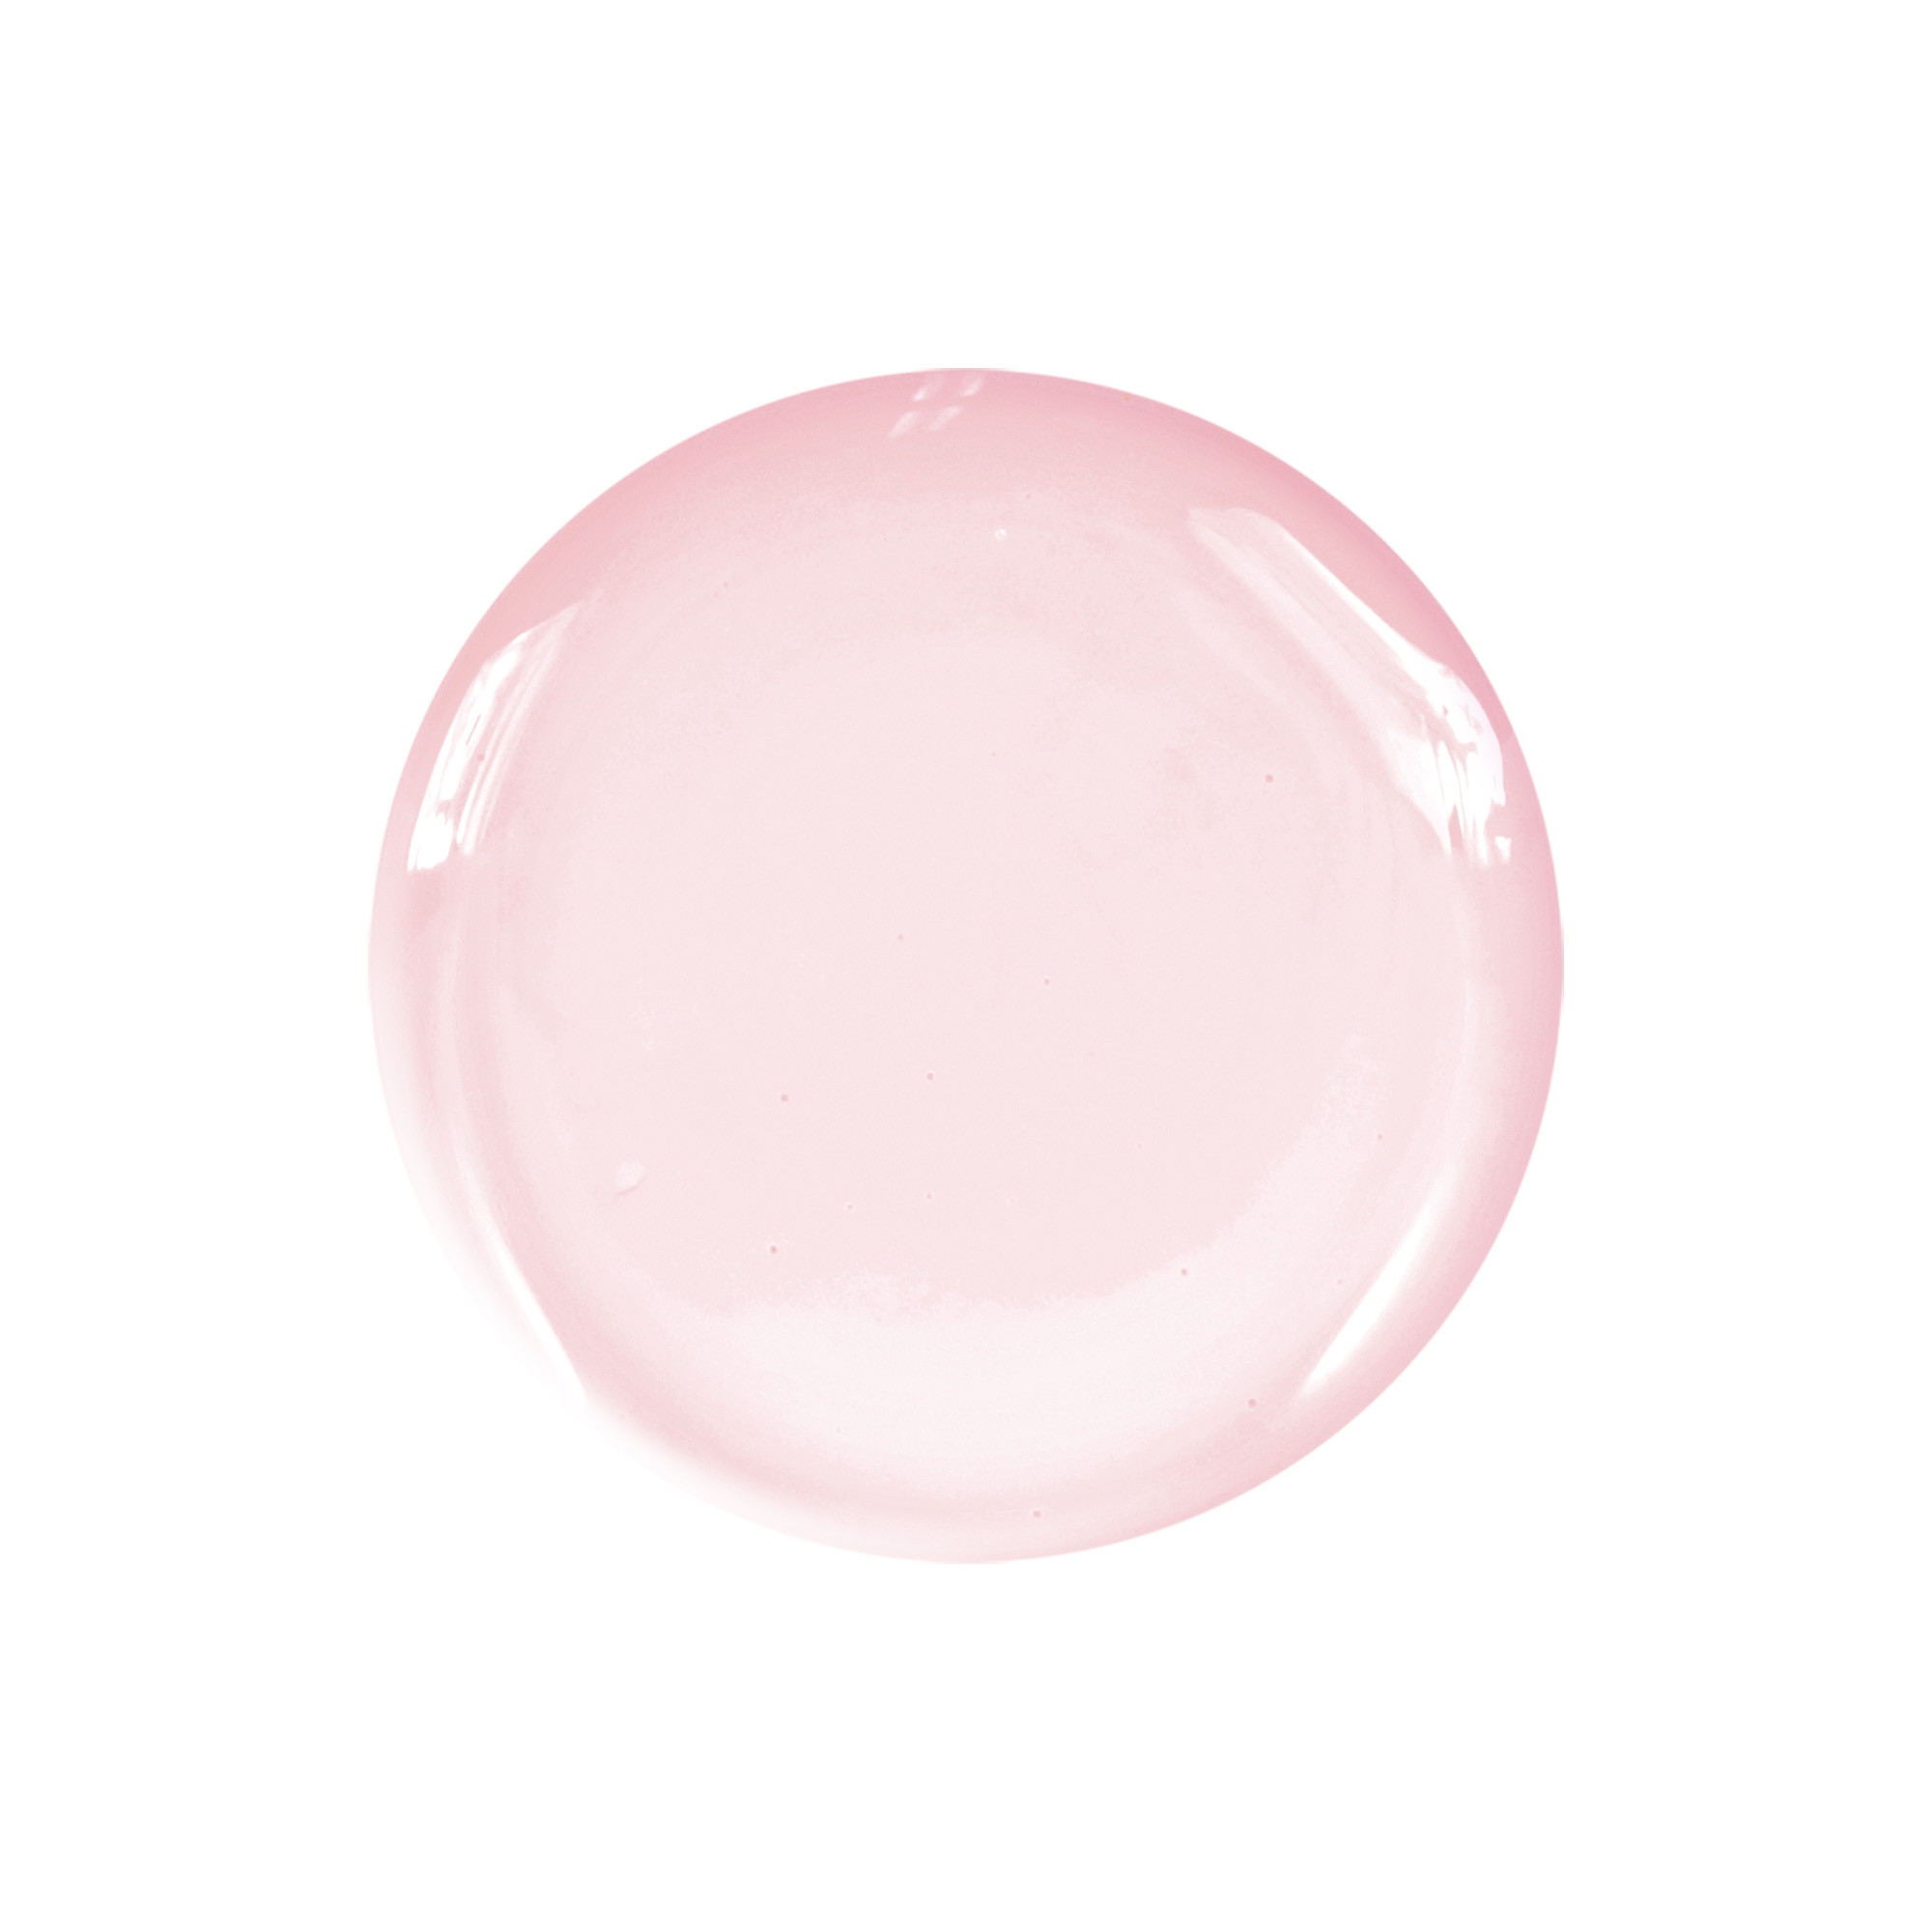 Semi-permanent nail polish pink nude Rokoko 10 ml Laqerìs TNS